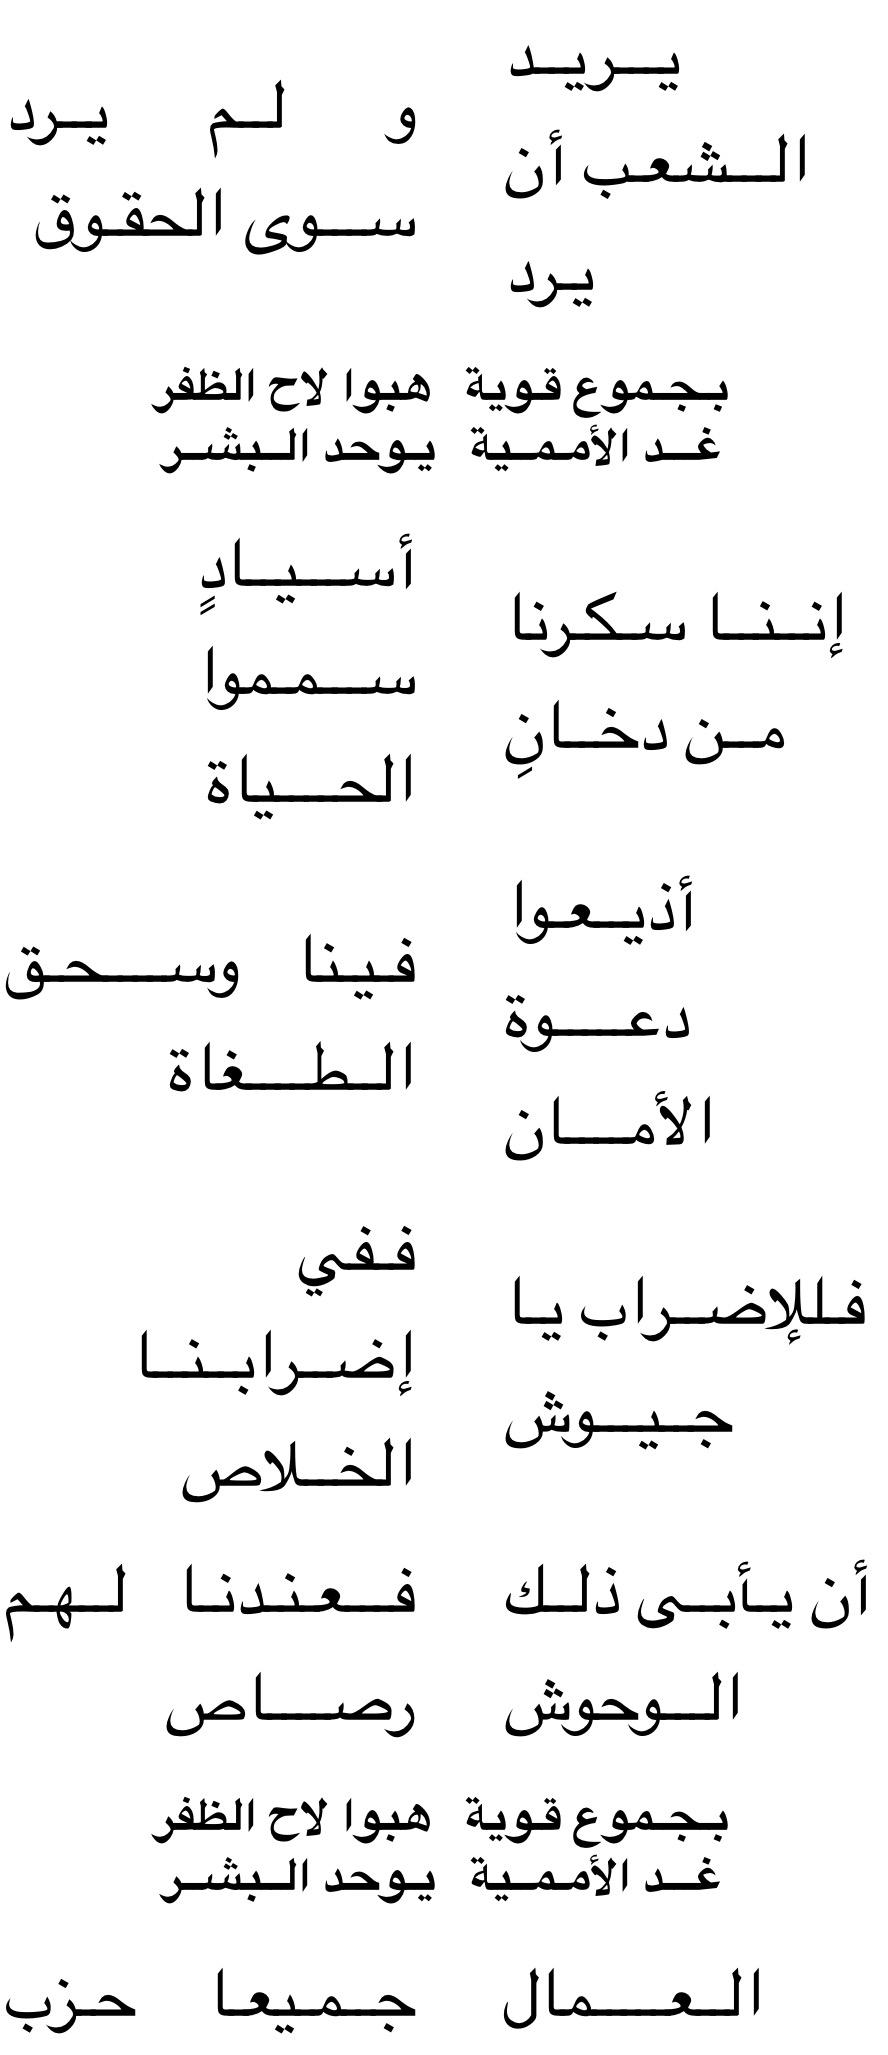 有人知道阿拉伯语版本的国际歌歌词吗?